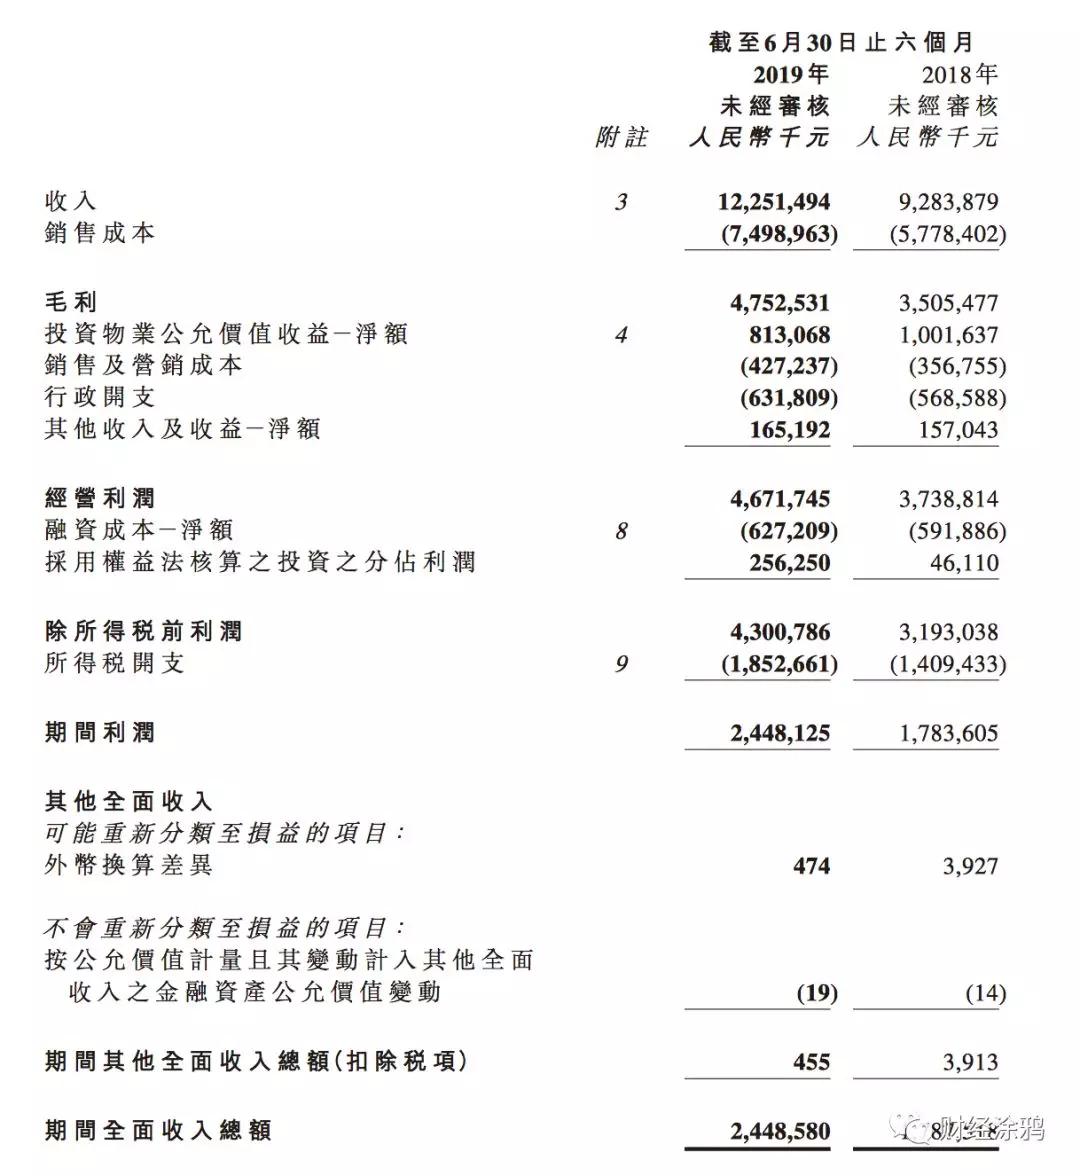 宝龙地产闪电配售1.47亿股 折价8.63%募资7.81亿港元